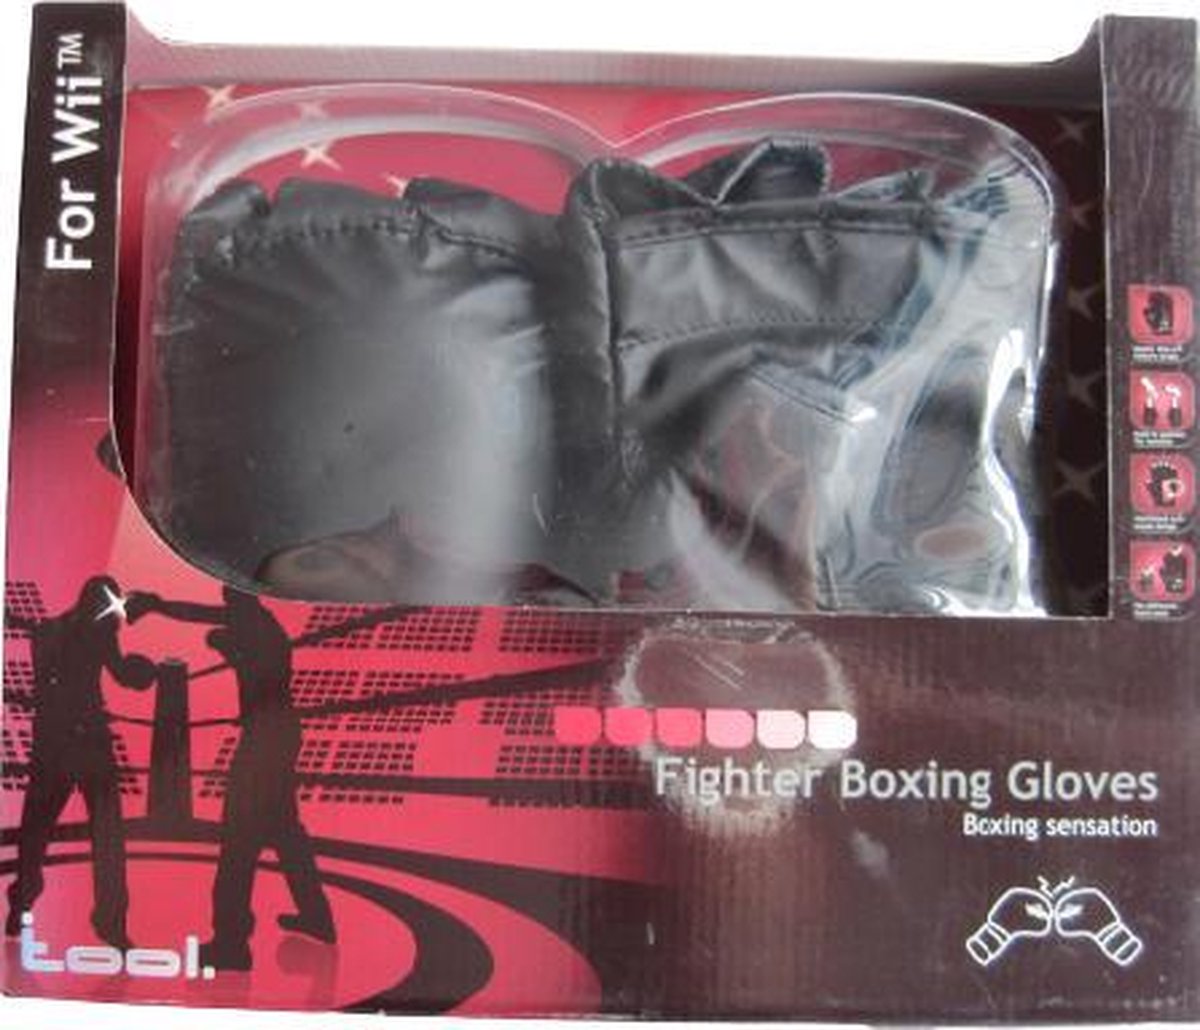 Fighter Boxing Gloves voor de Nintendo Wii | Real Boxing Sensation!